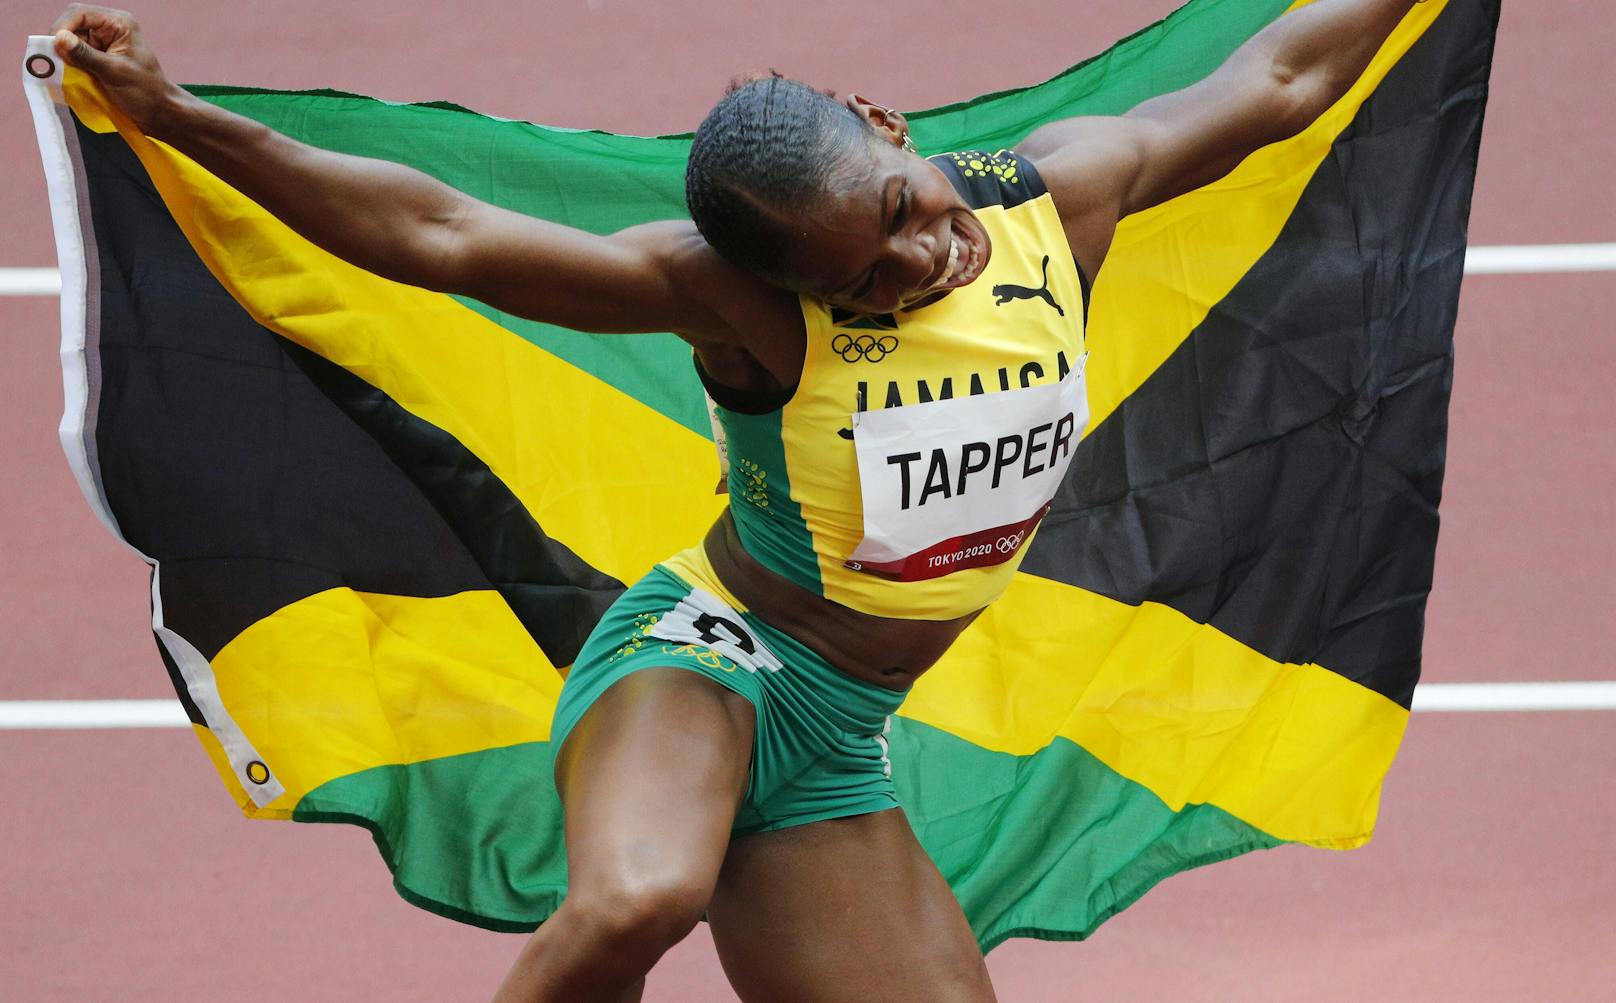 Jamaika-Athletin: "Österreich, adoptiere mich!"